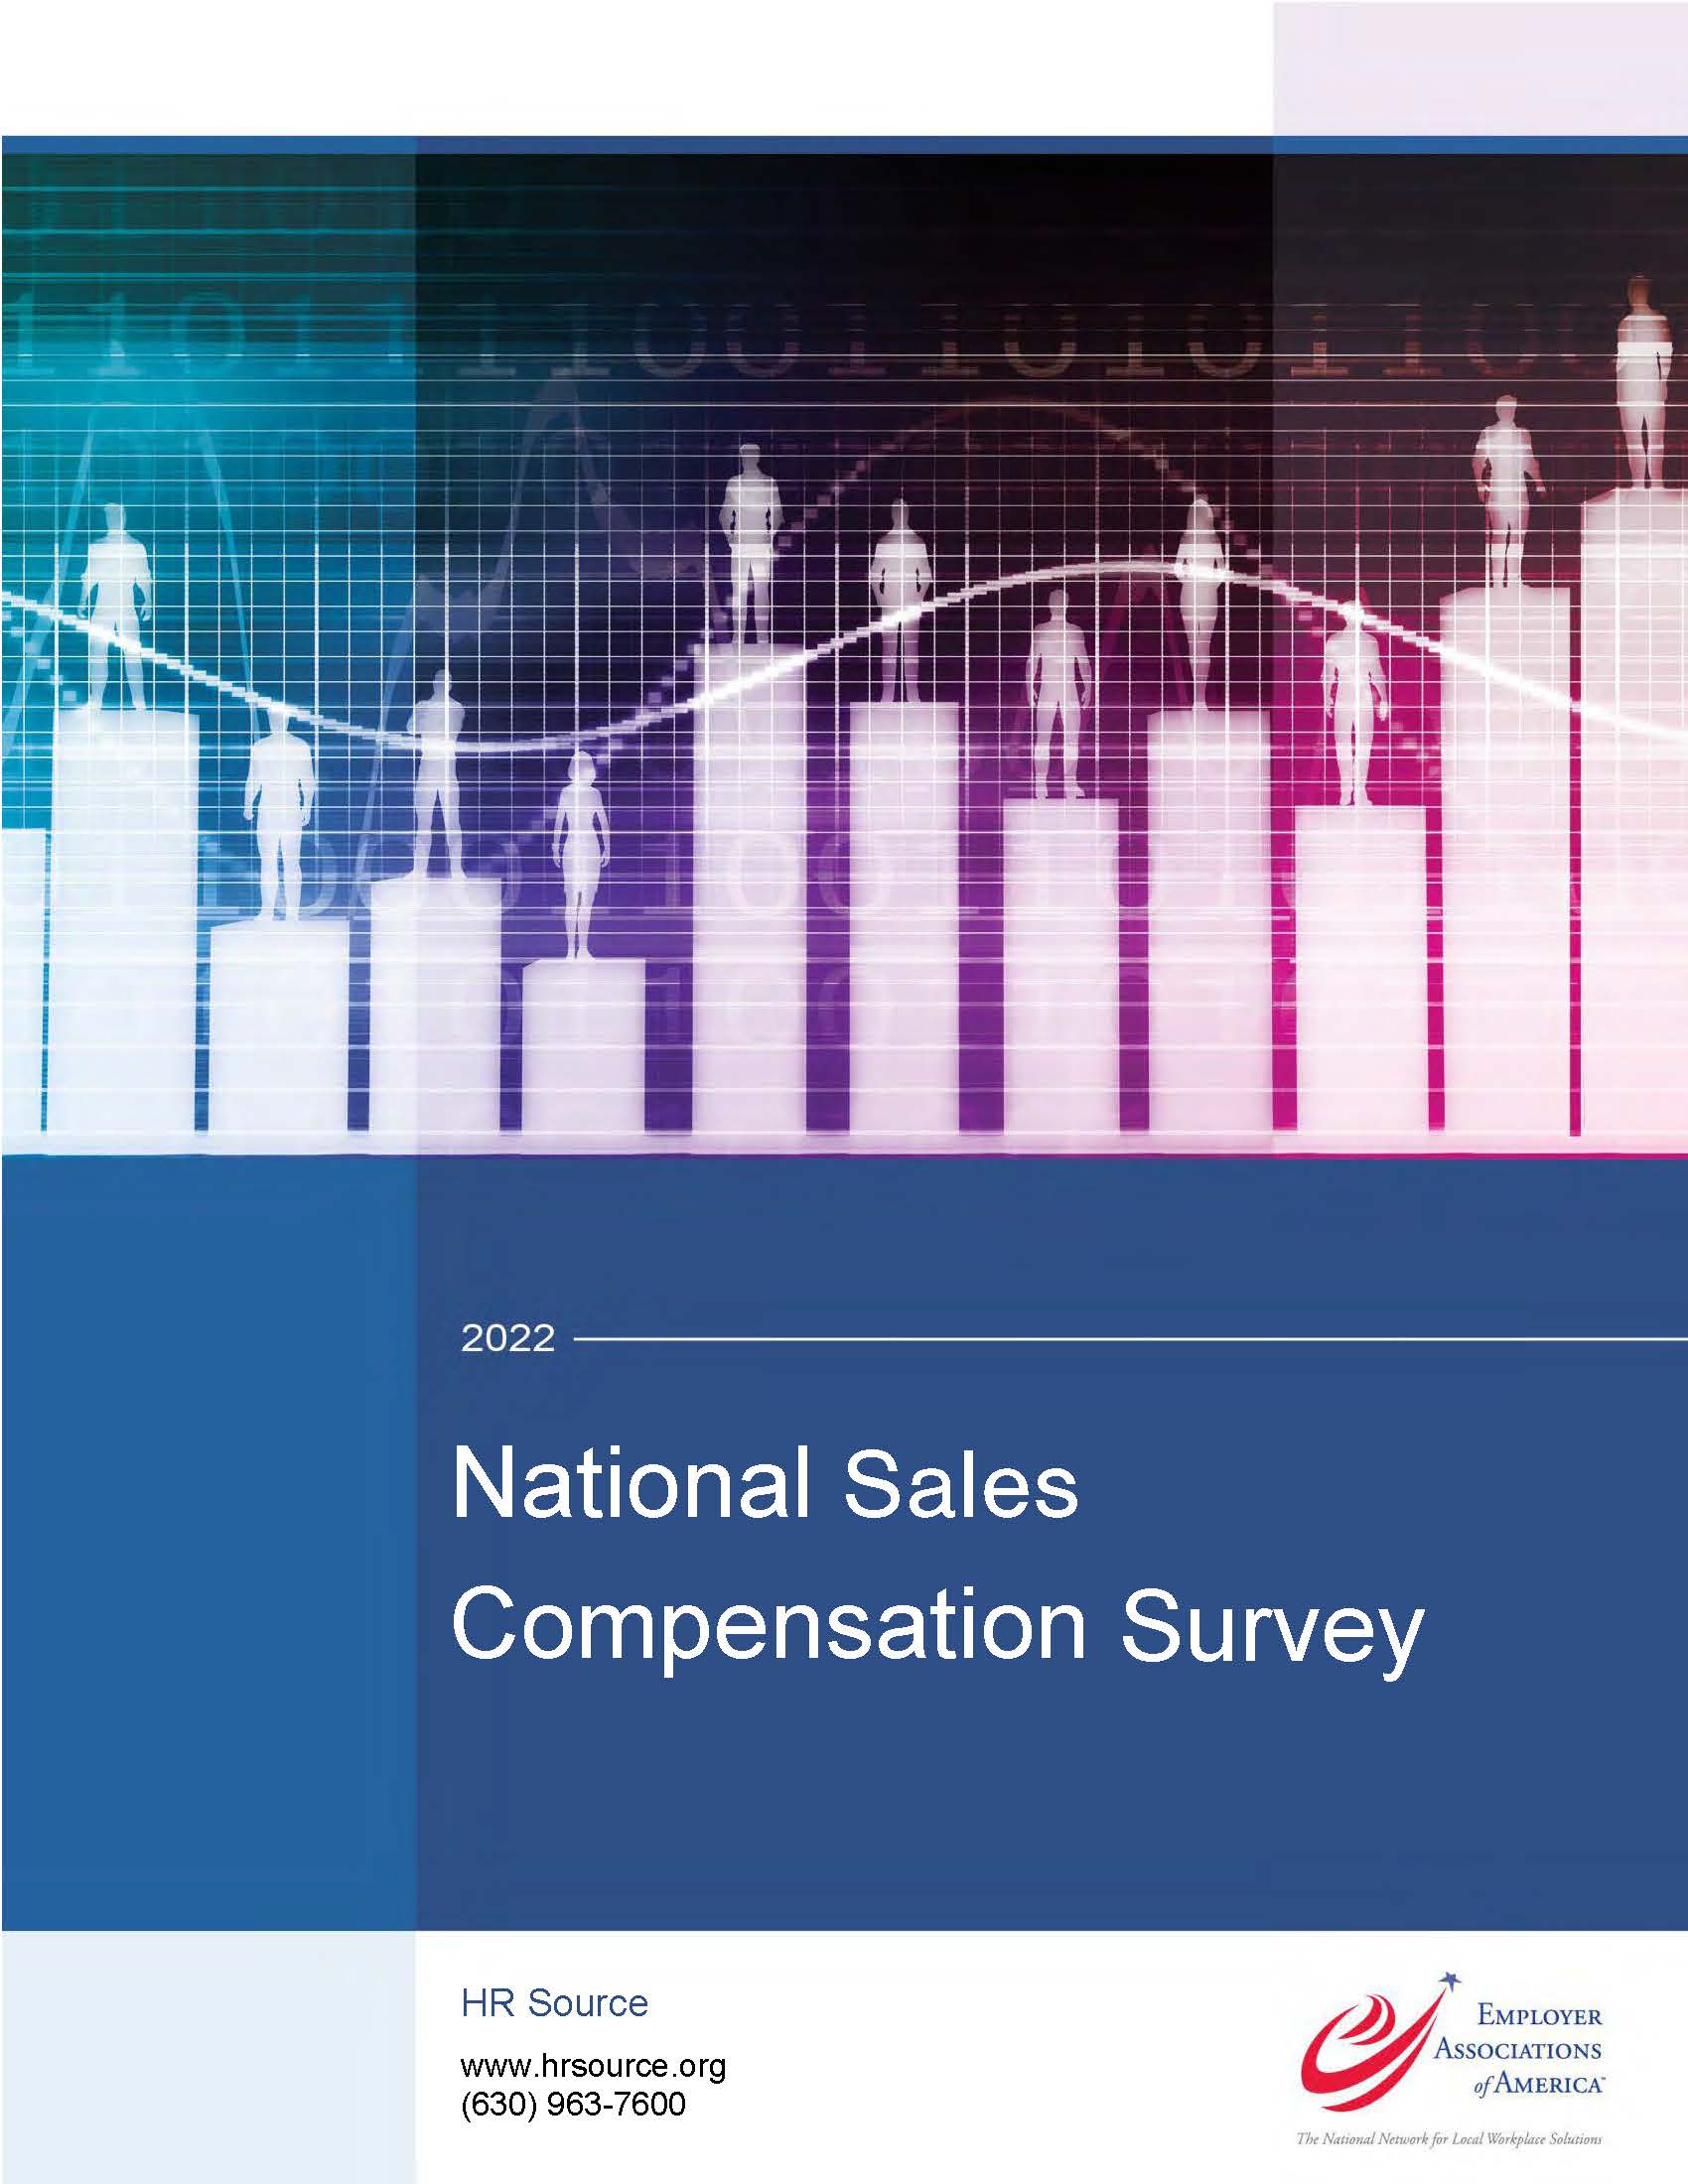 National Sales Compensation Survey 2022